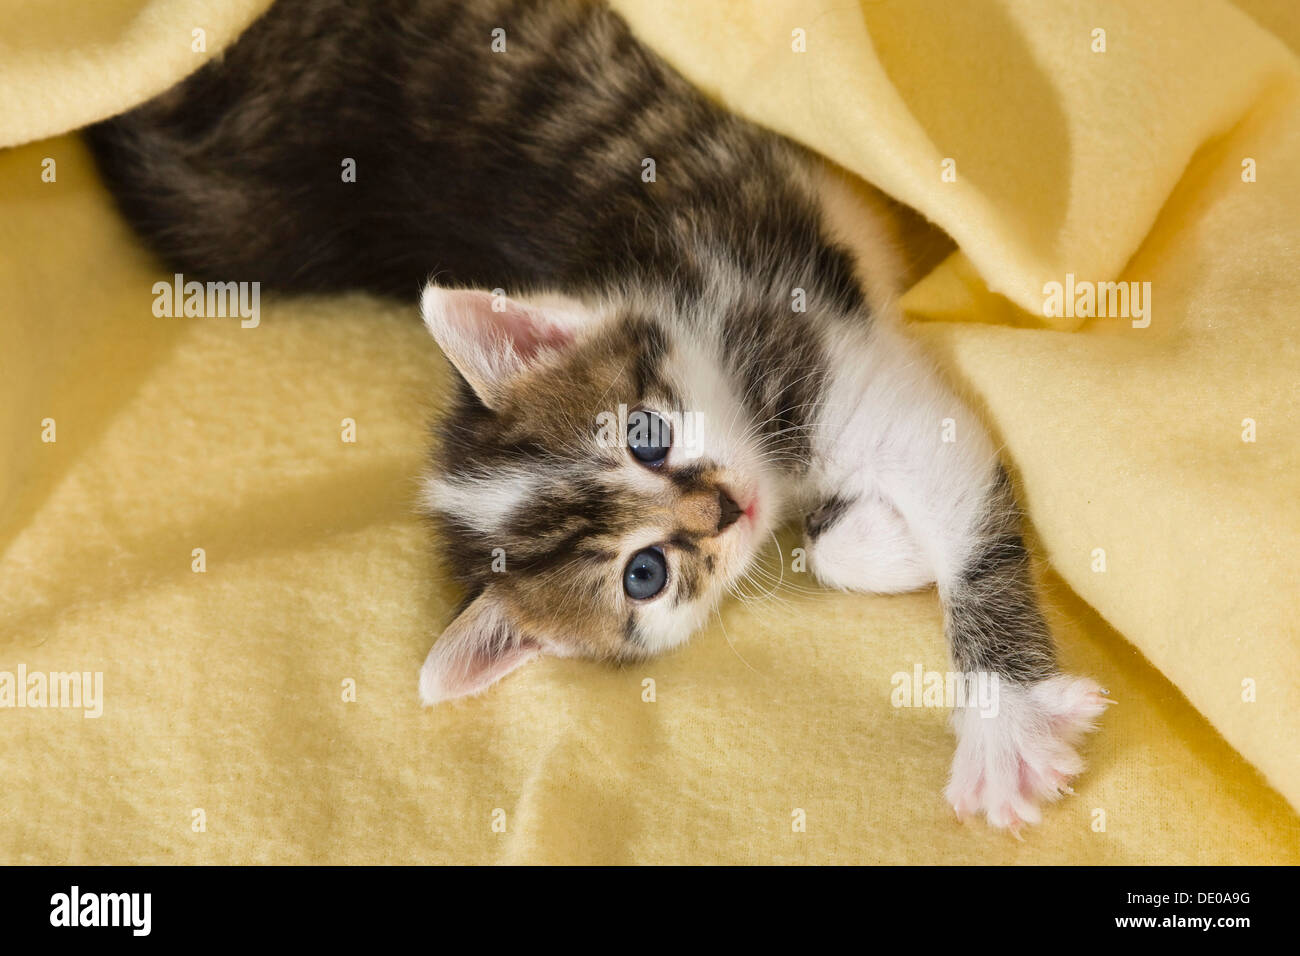 Kitten stretching Stock Photo